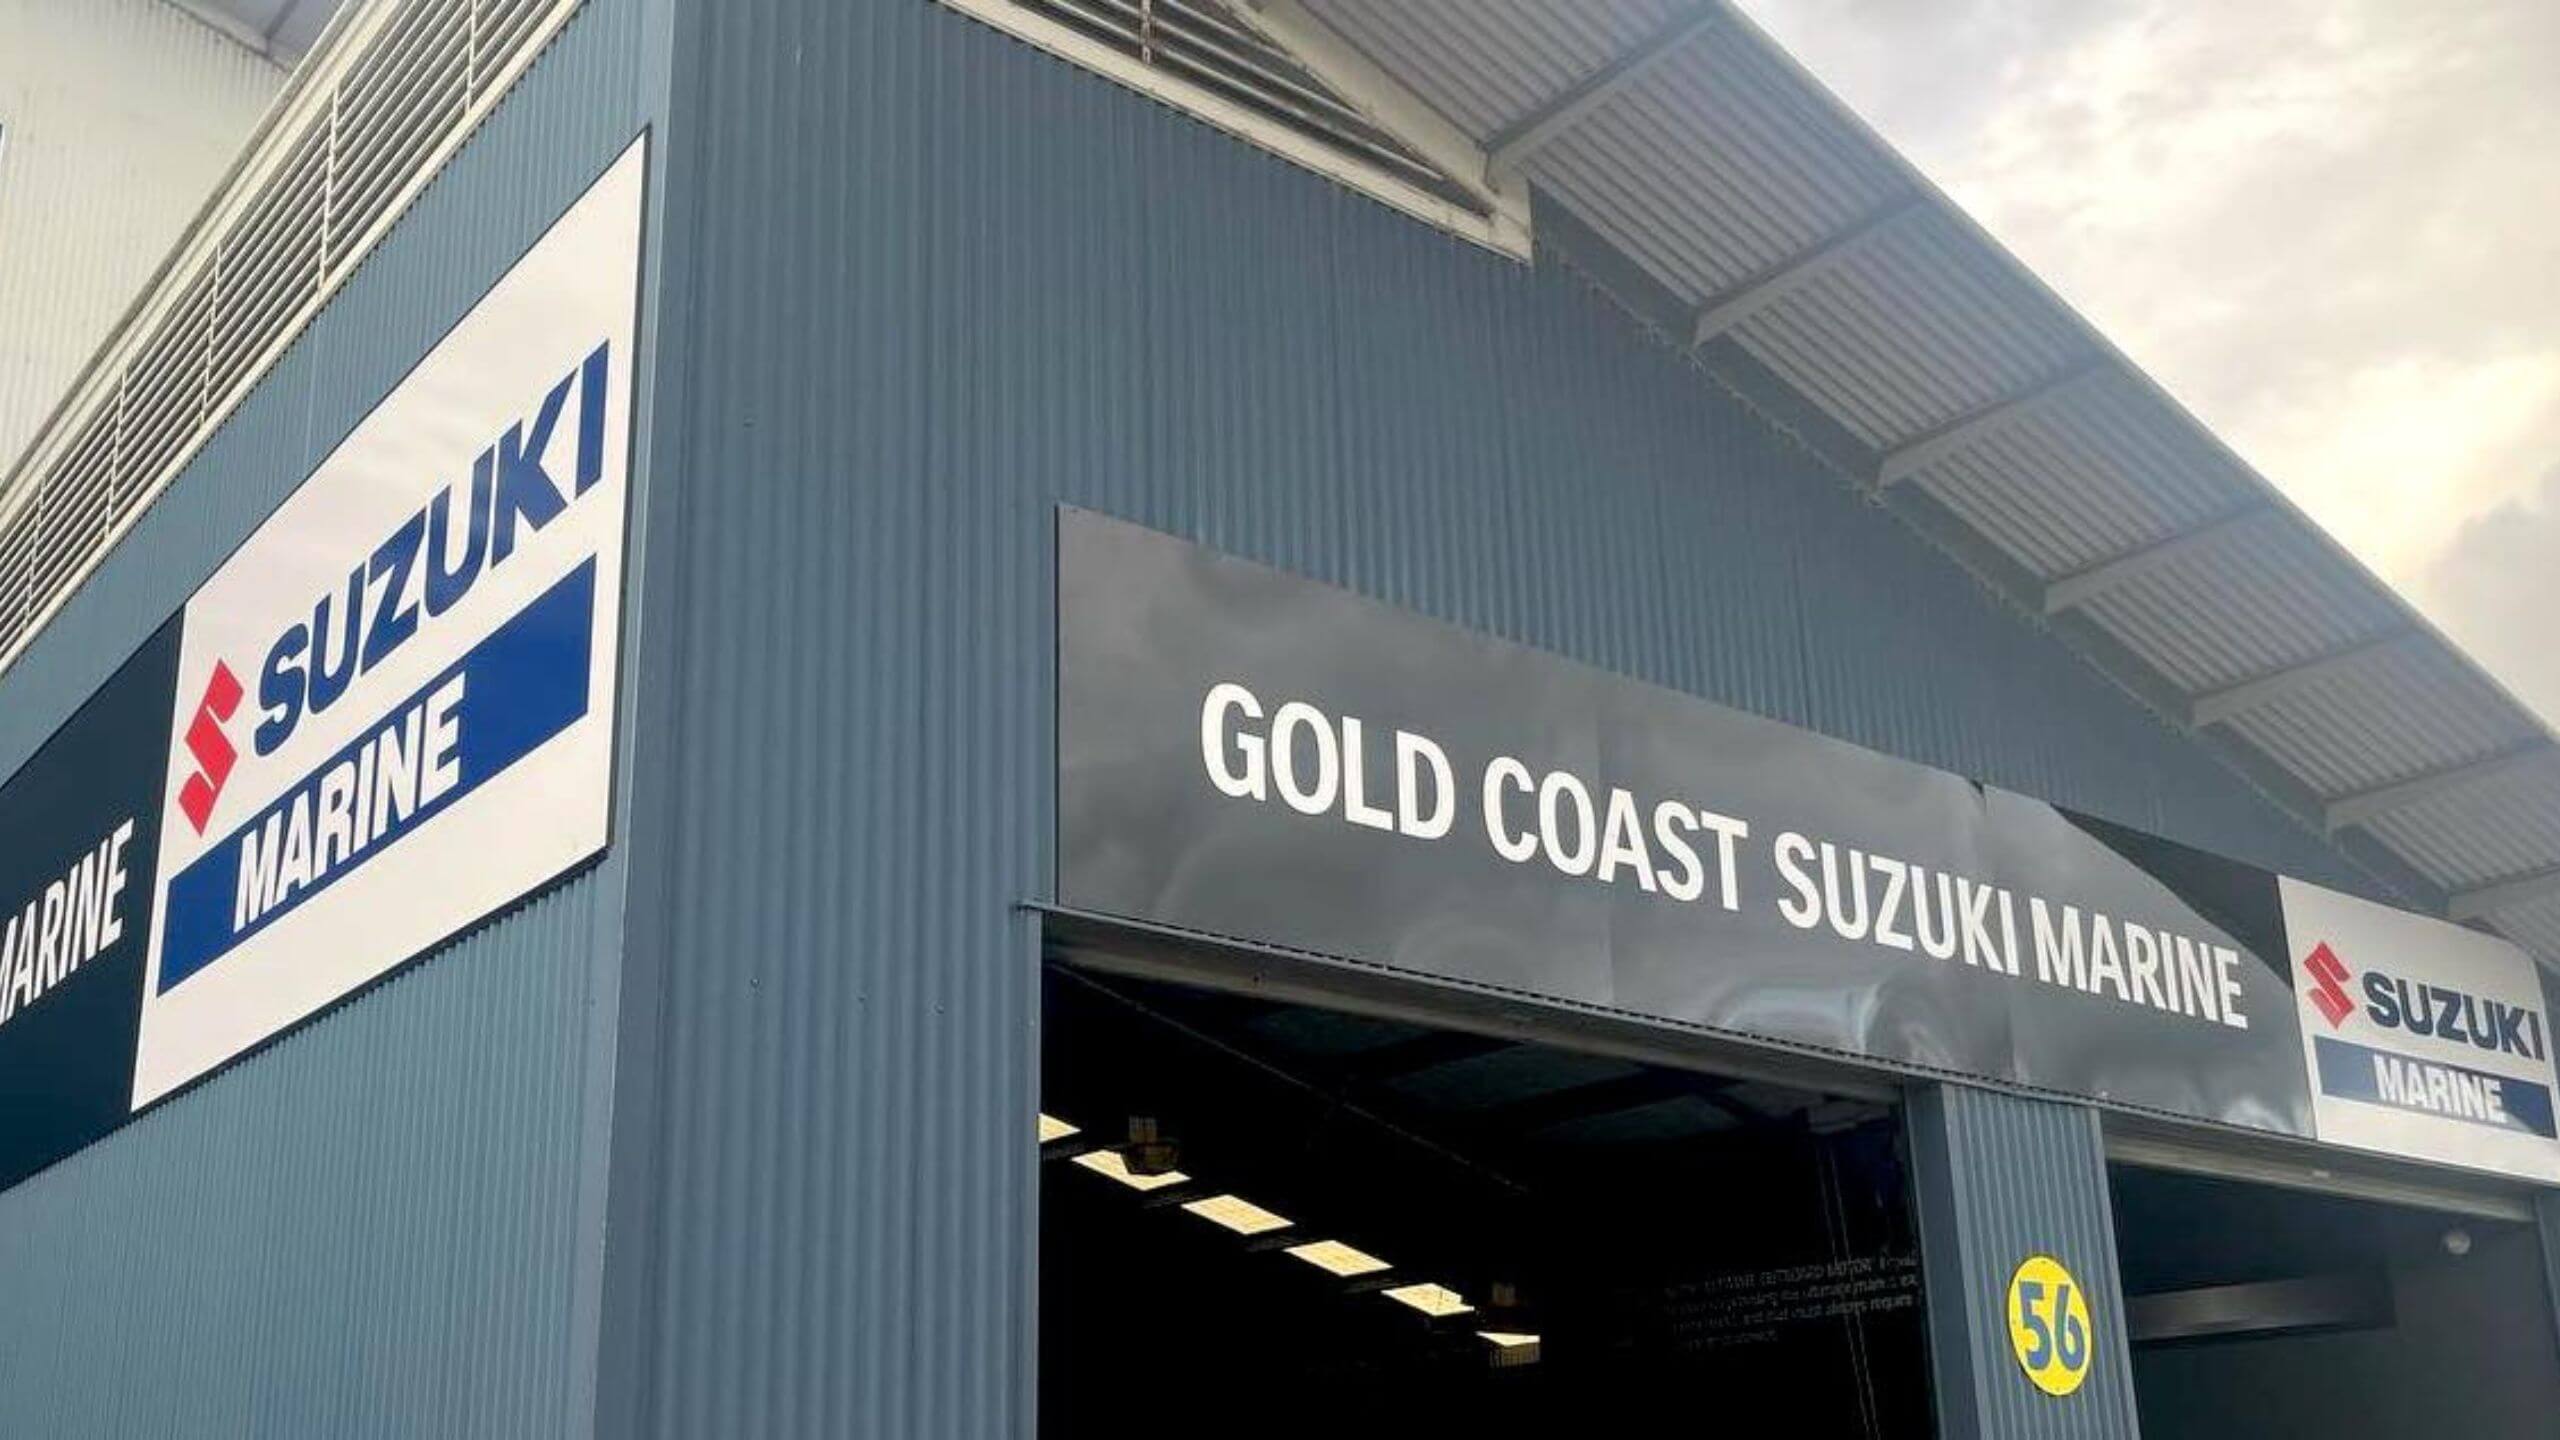 Gold Coast Suzuki Marine